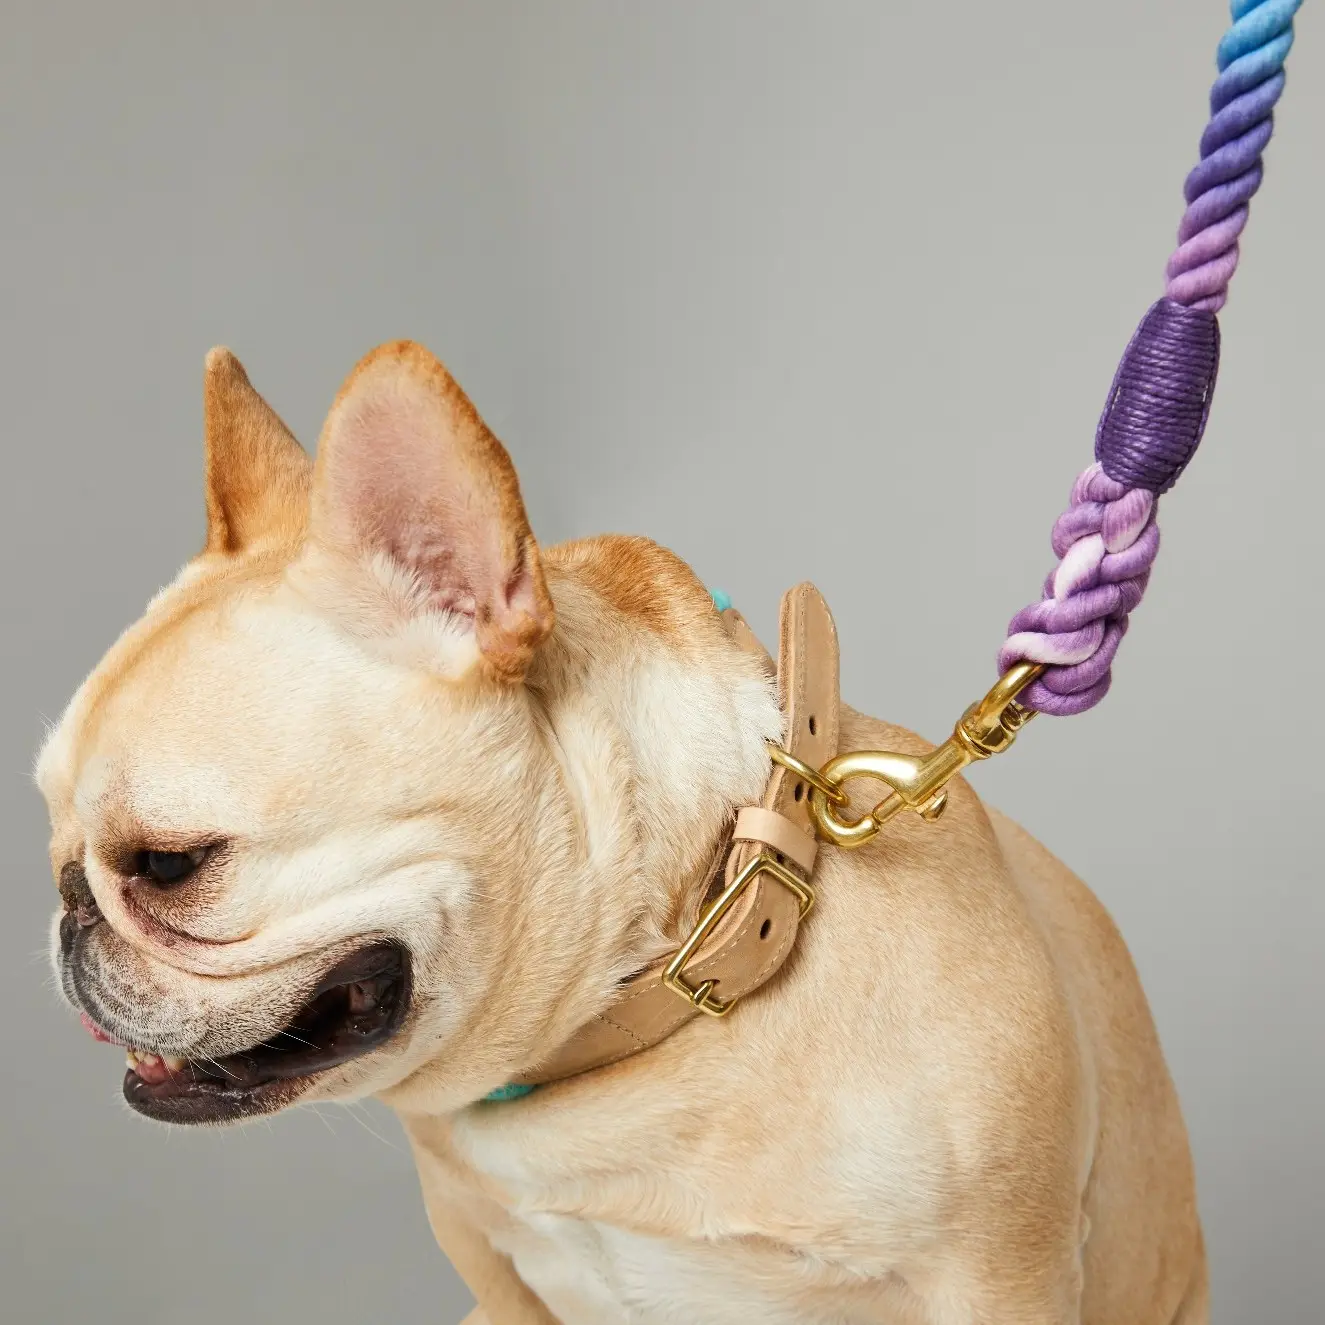 UFBemo 사용자 정의 조정 가능한 럭셔리 부드러운 가죽 레인보우 컬러 면 로프 애완 동물 개 목걸이 및 가죽 끈 세트